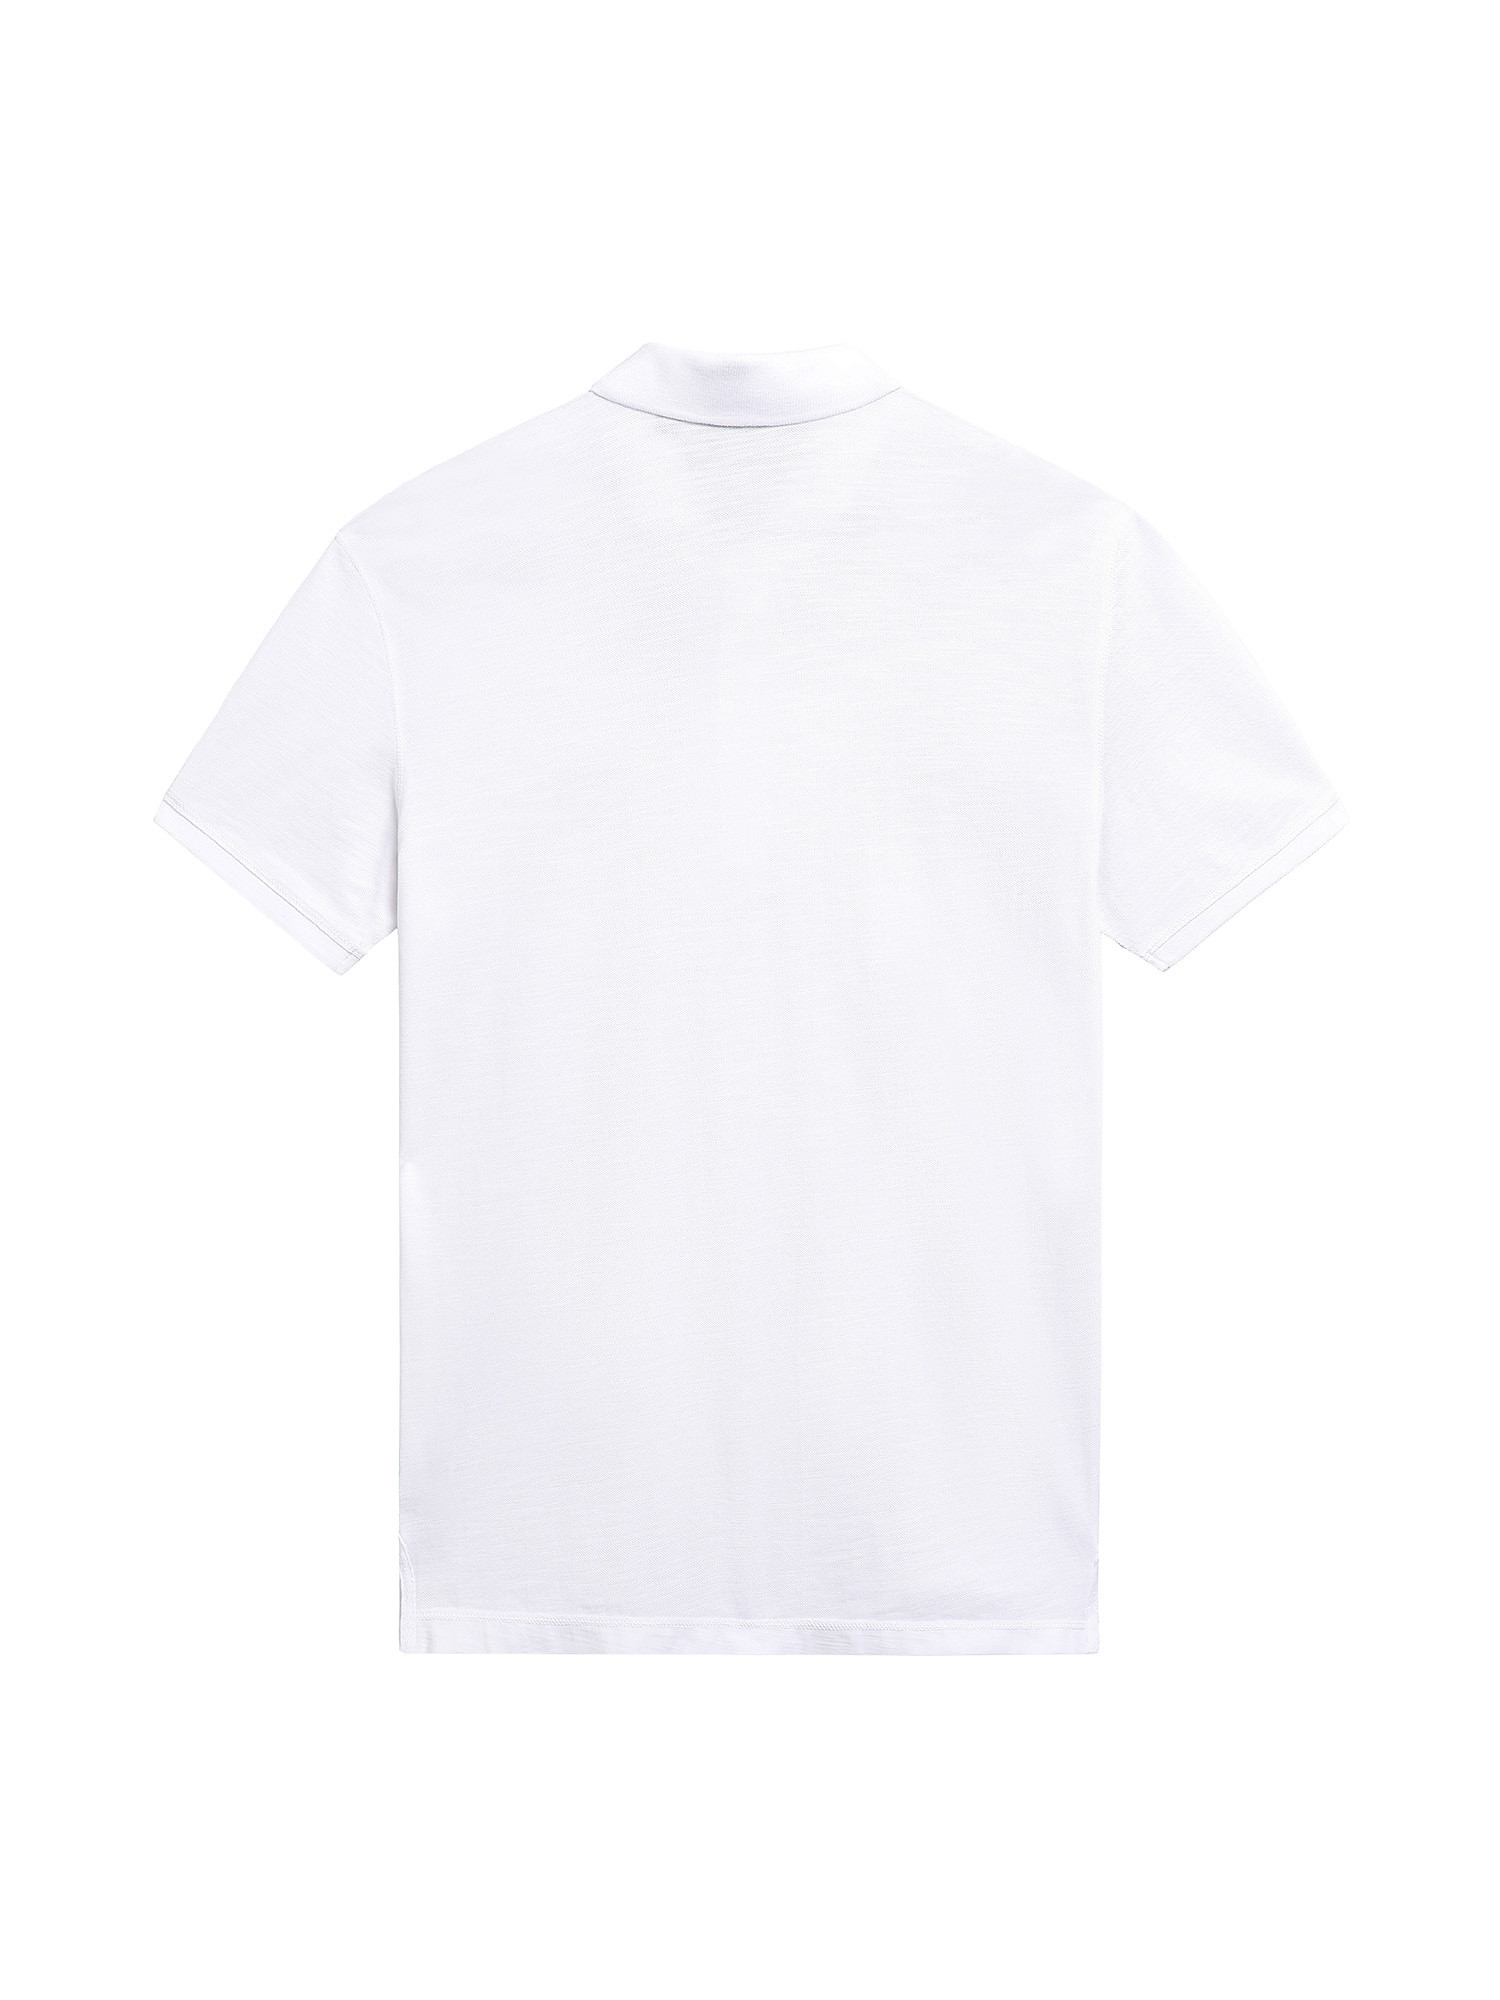 Short Sleeve Polo Ebea, White, large image number 1